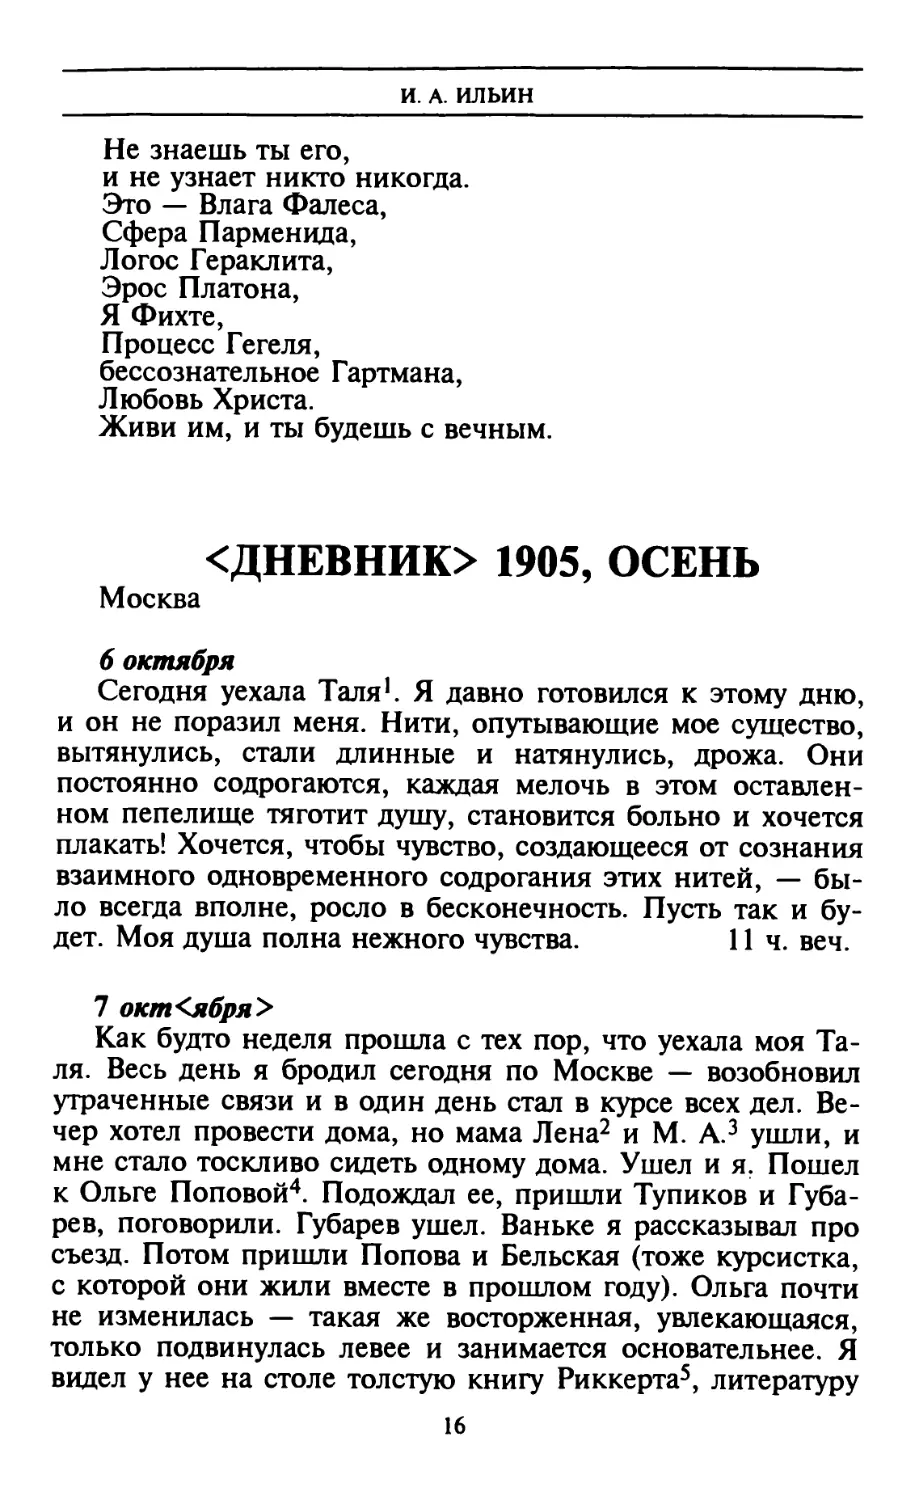 <Дневник> 1905, осень